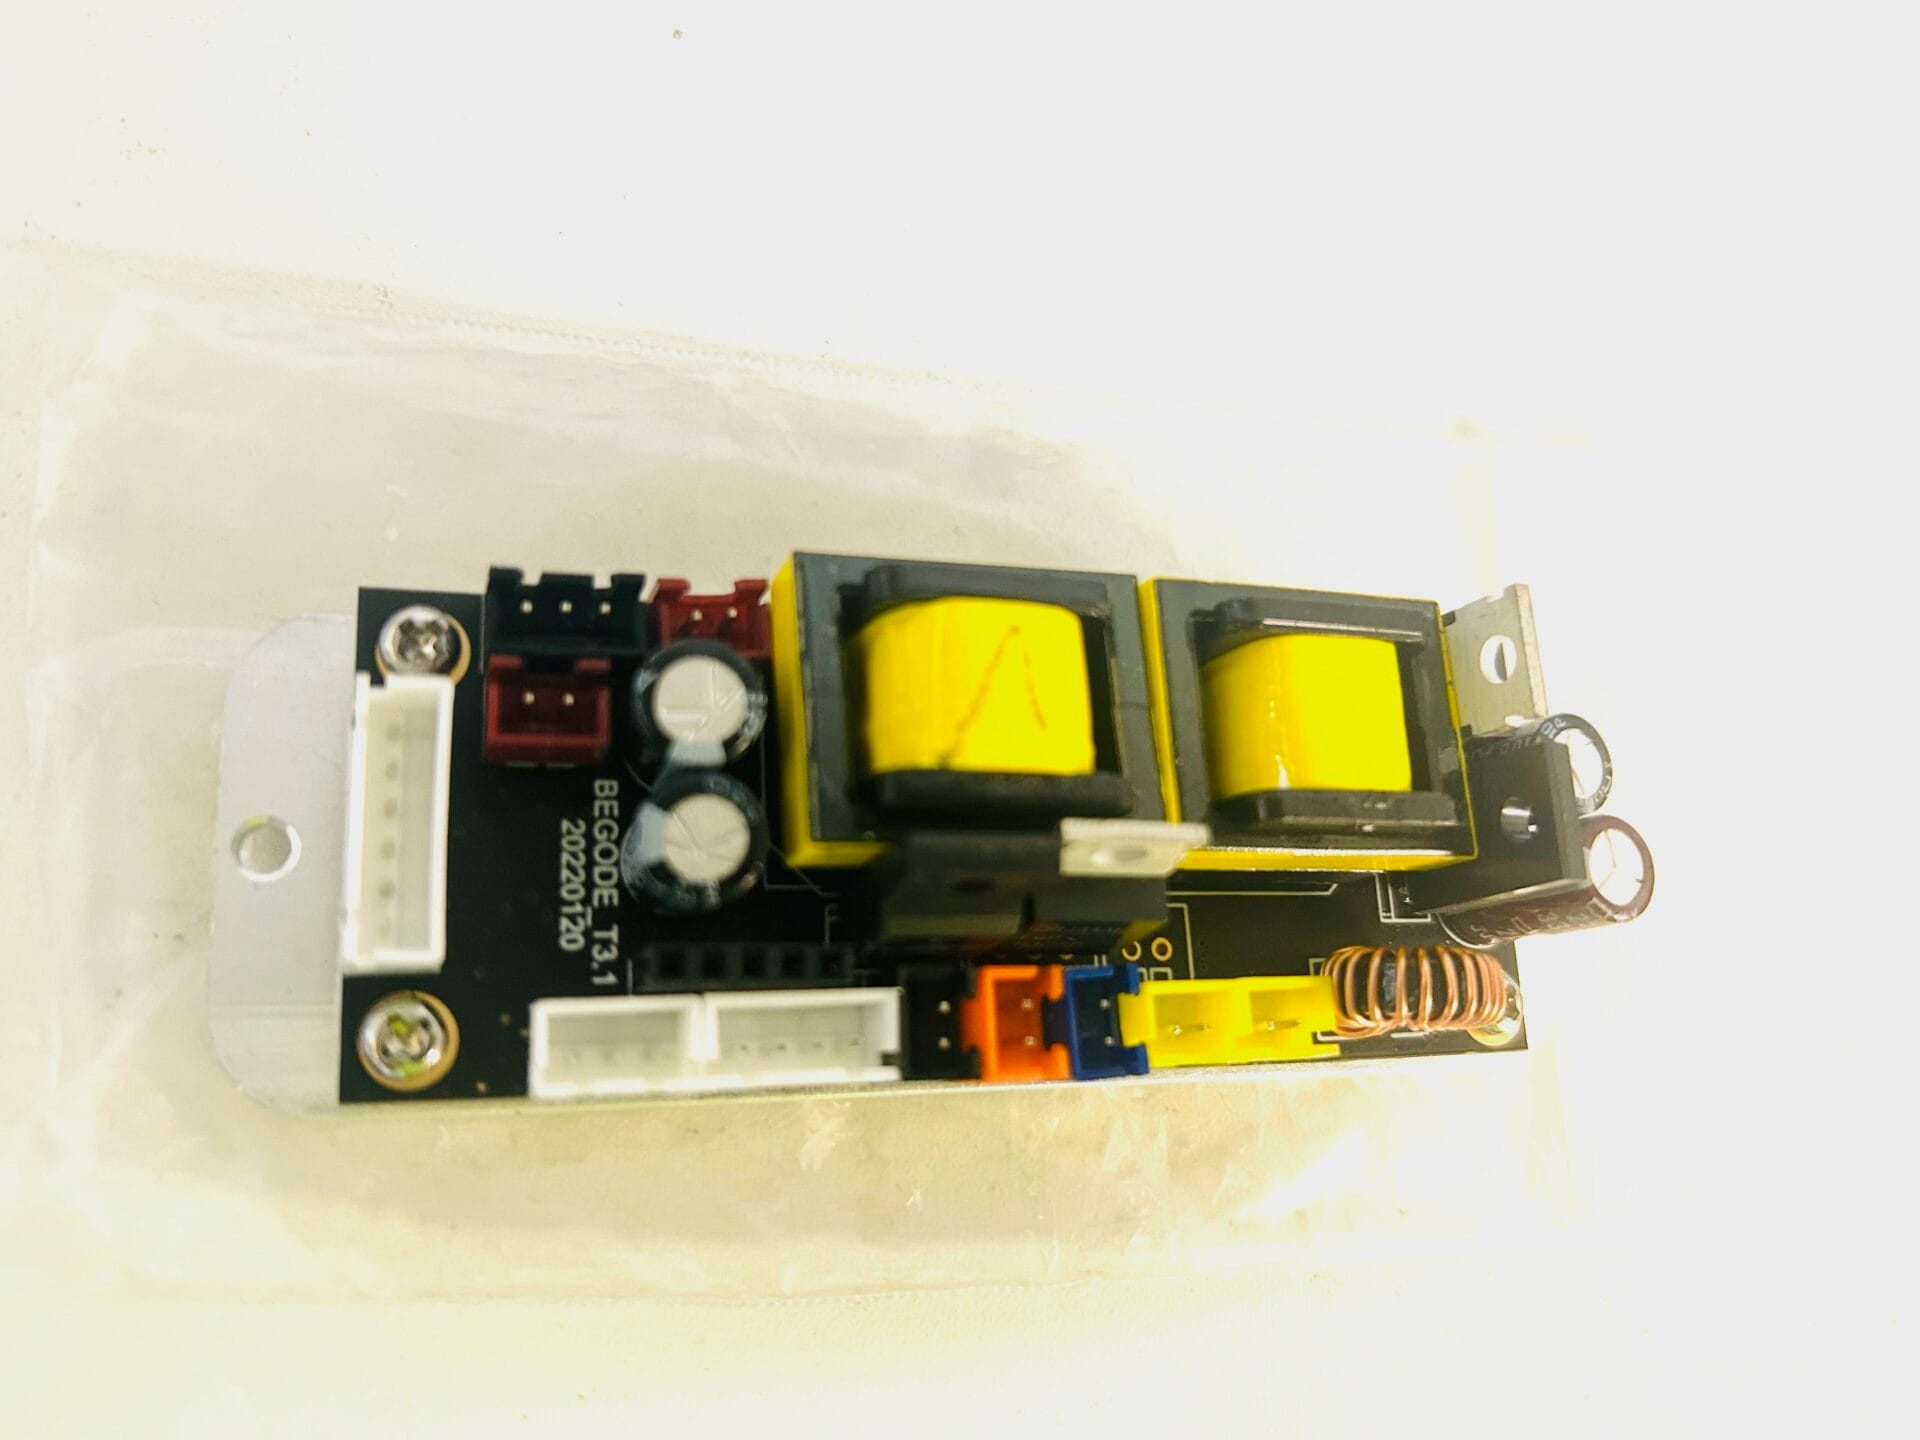 Begode Light module board